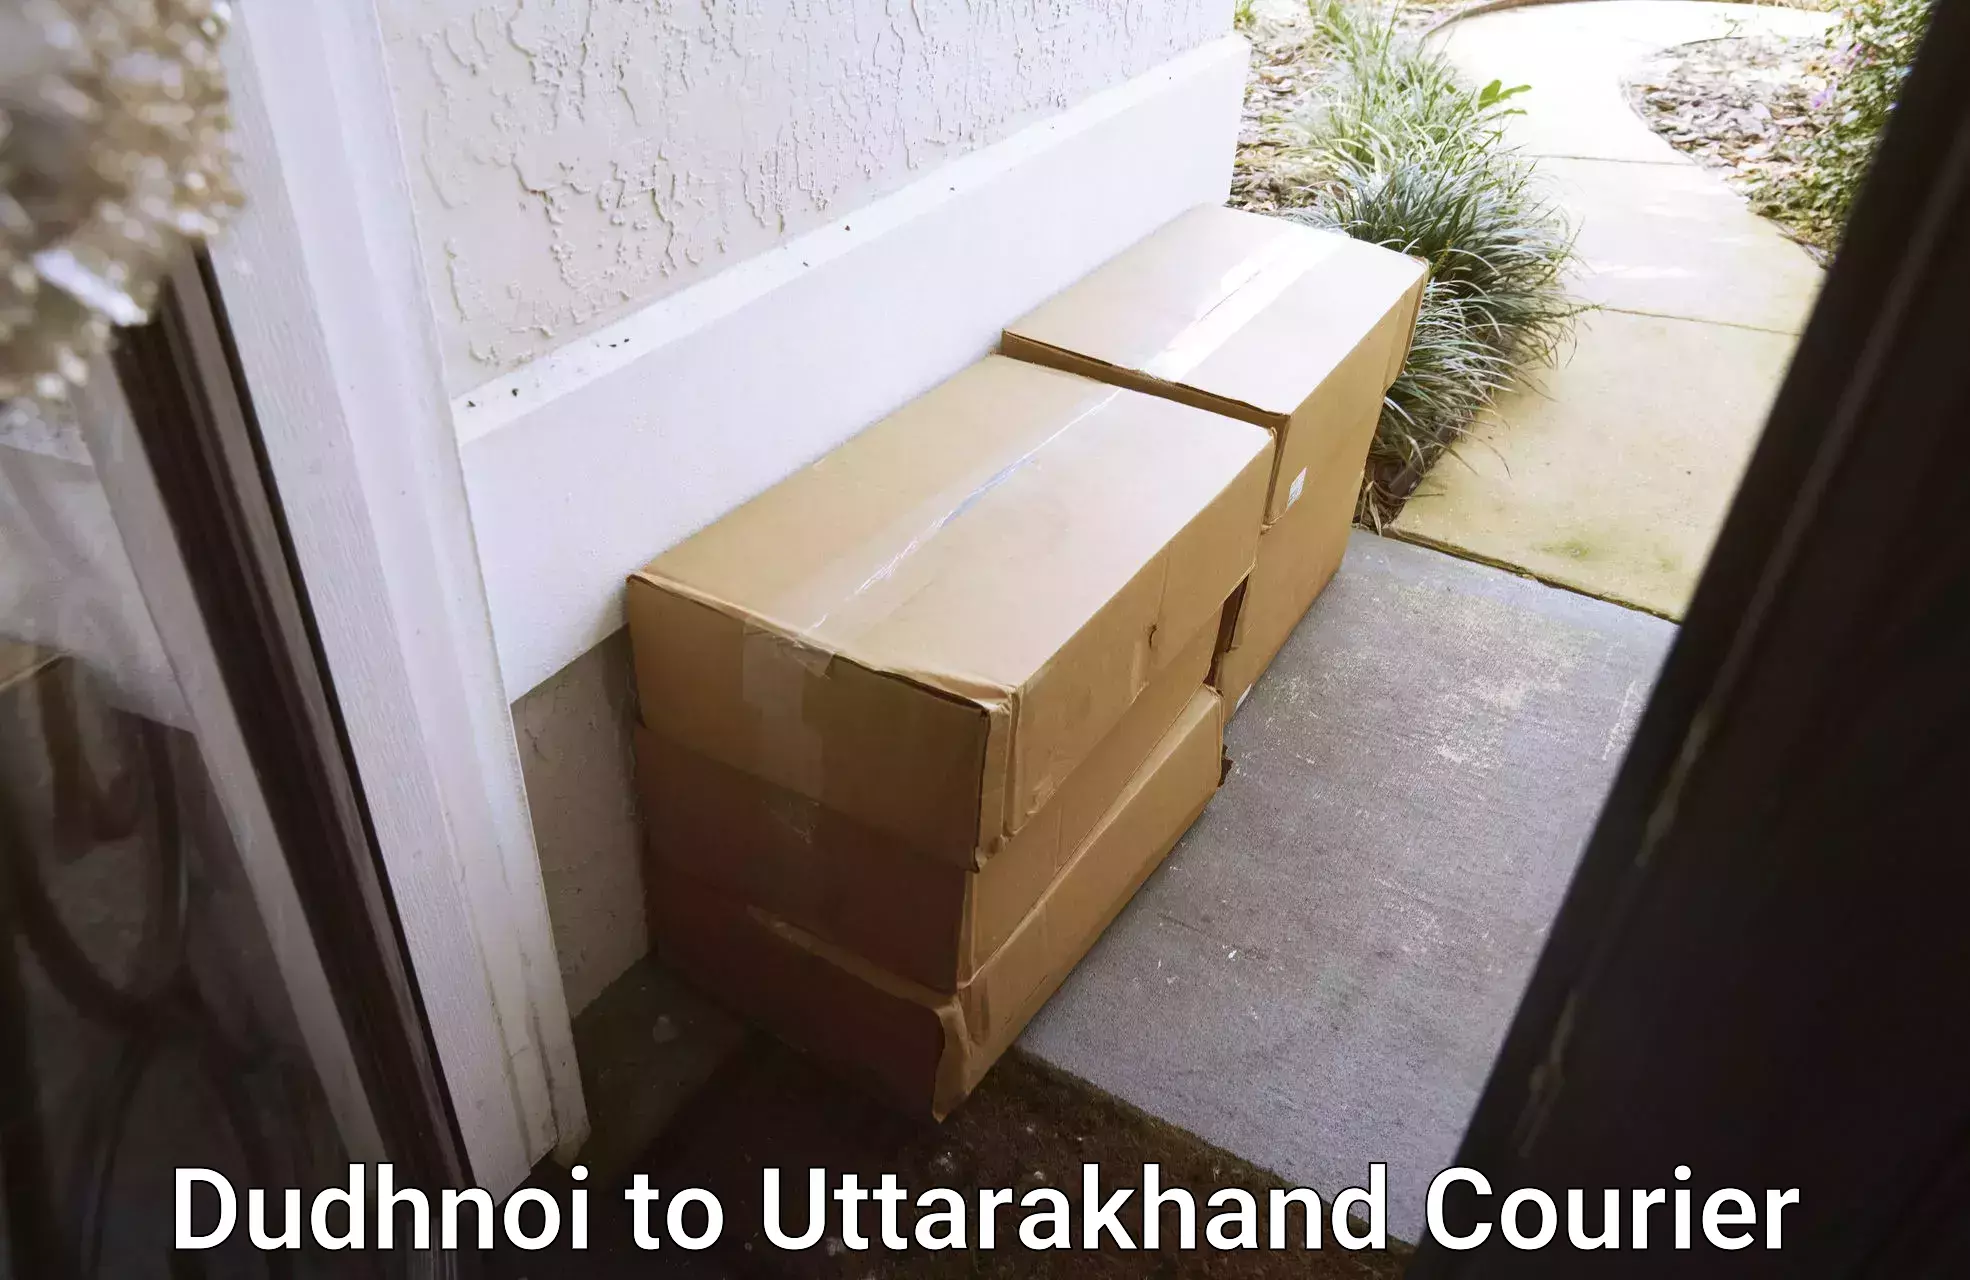 Custom courier packages Dudhnoi to Srinagar Pauri Garhwal